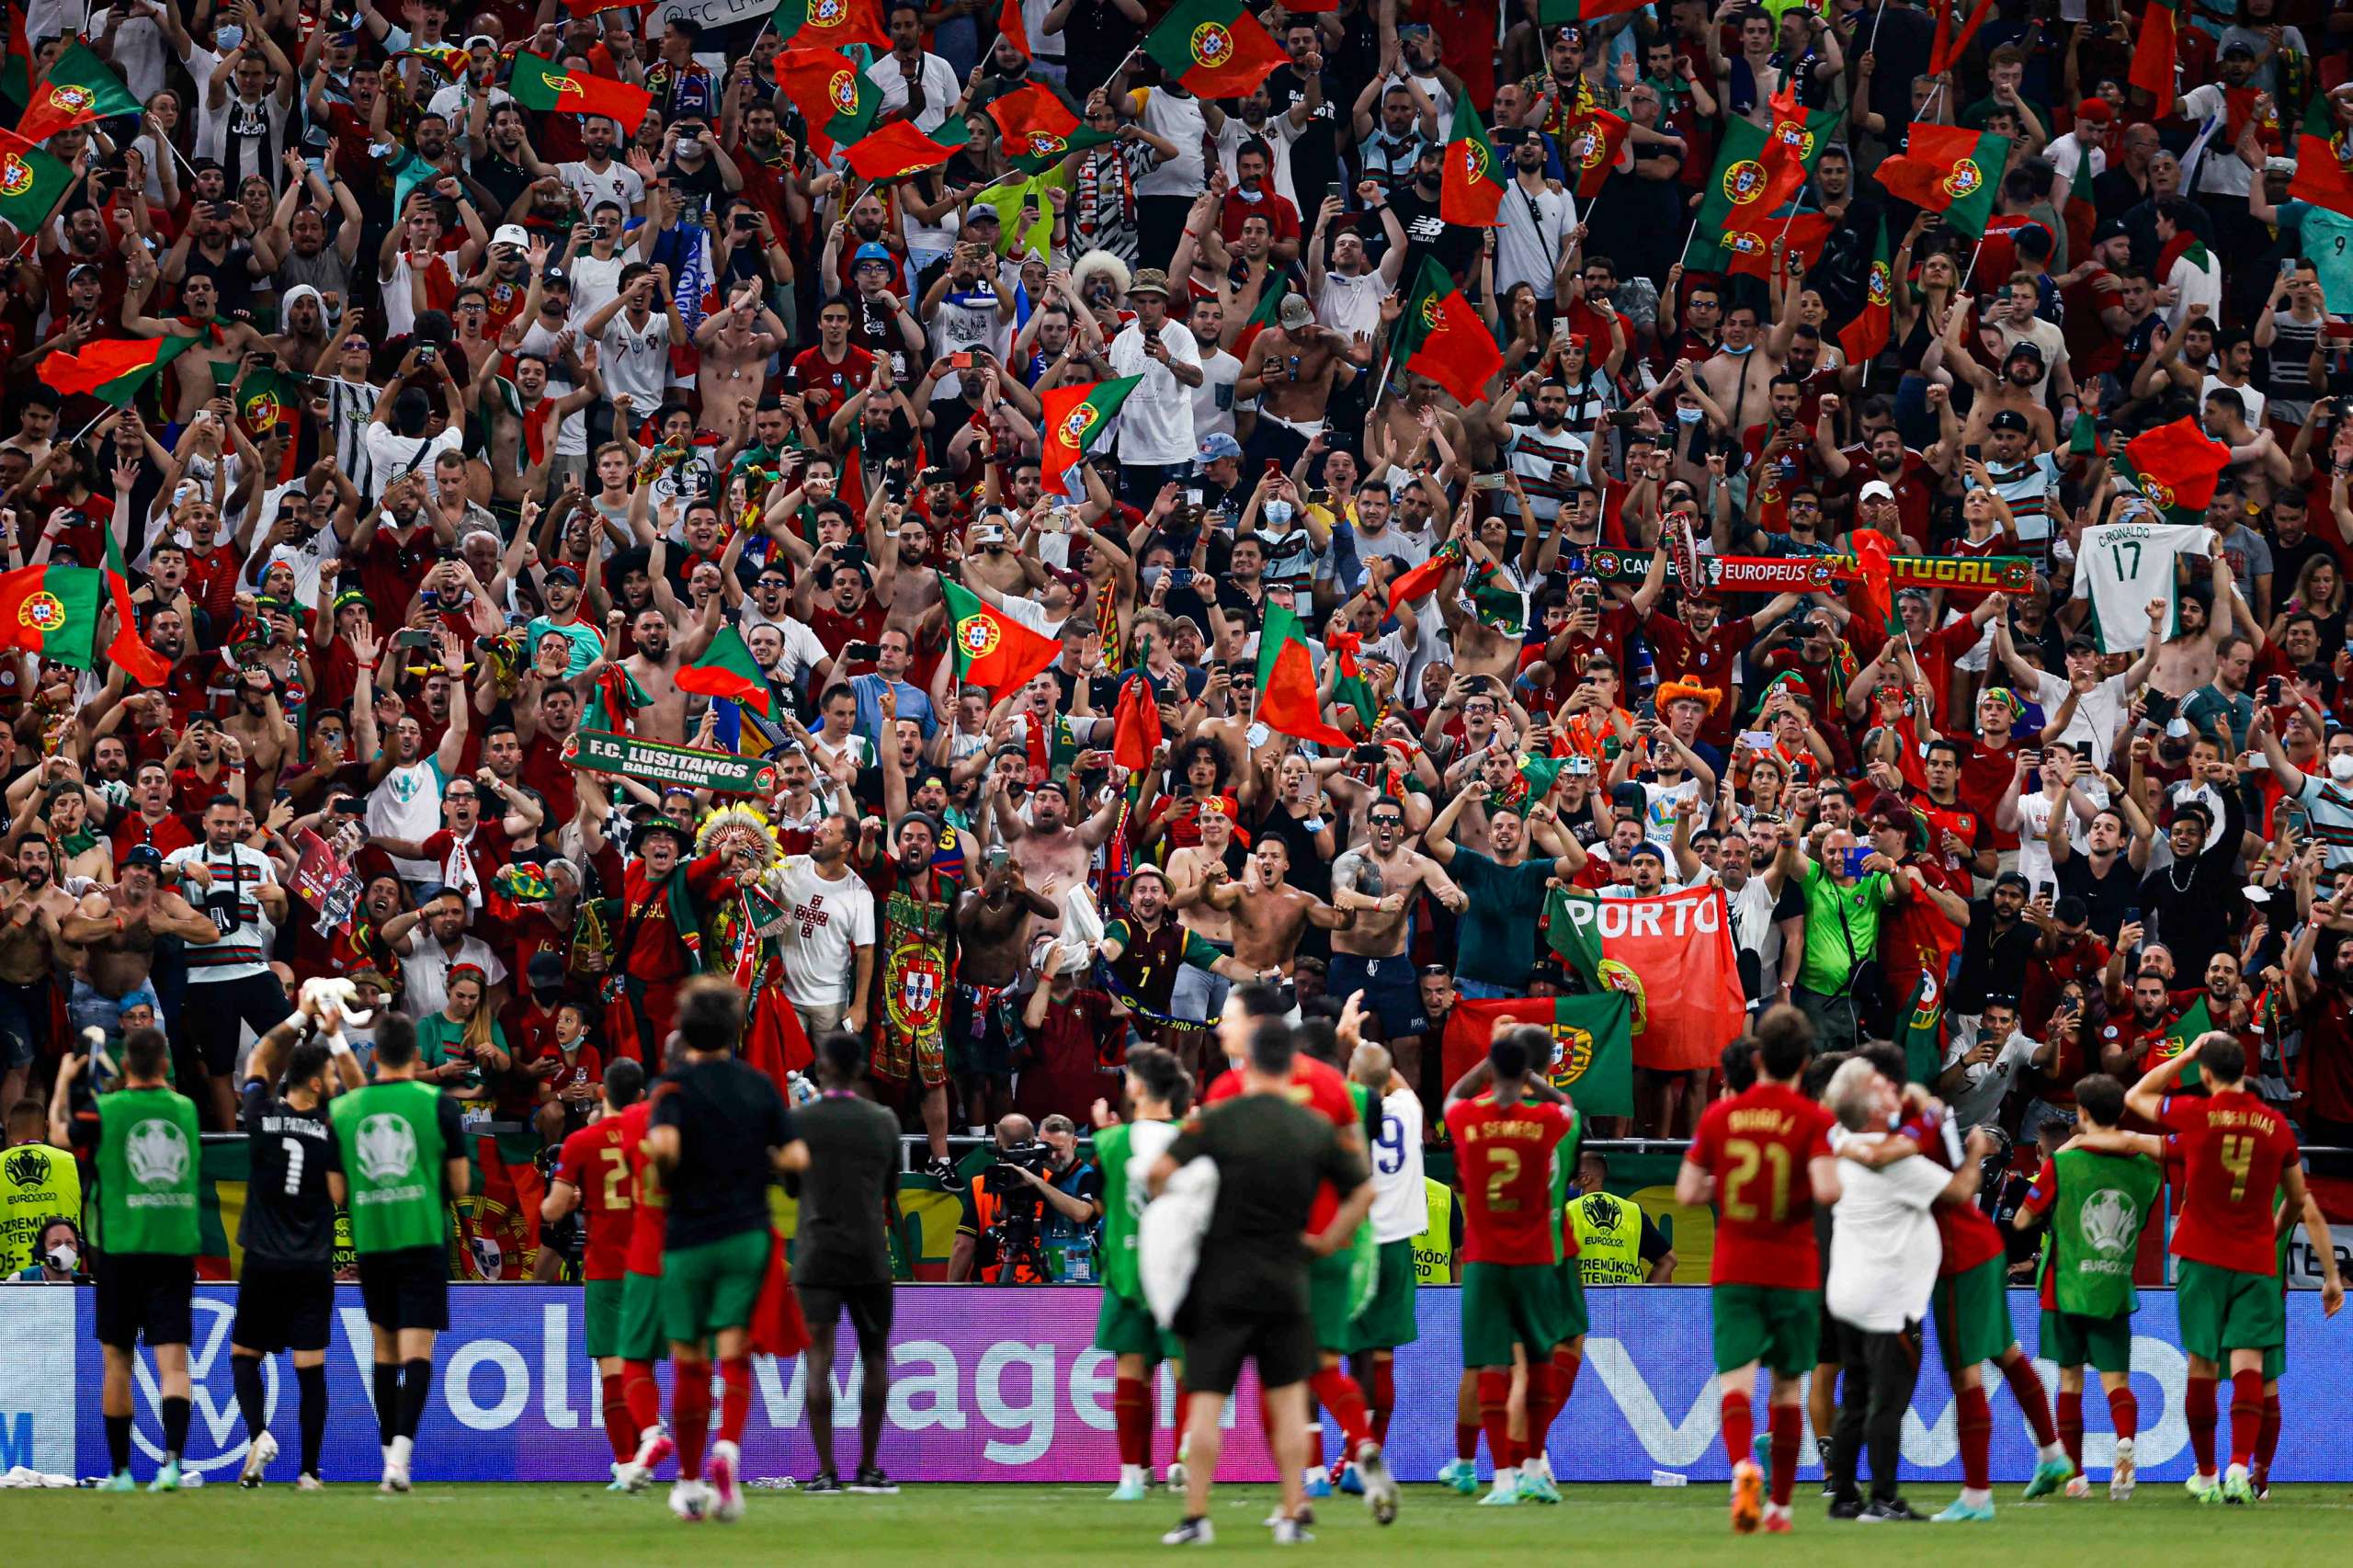 EUROCOPA: Oitavas de final terão Inglaterra x Alemanha e Bélgica x Portugal; Duelos AQUI!